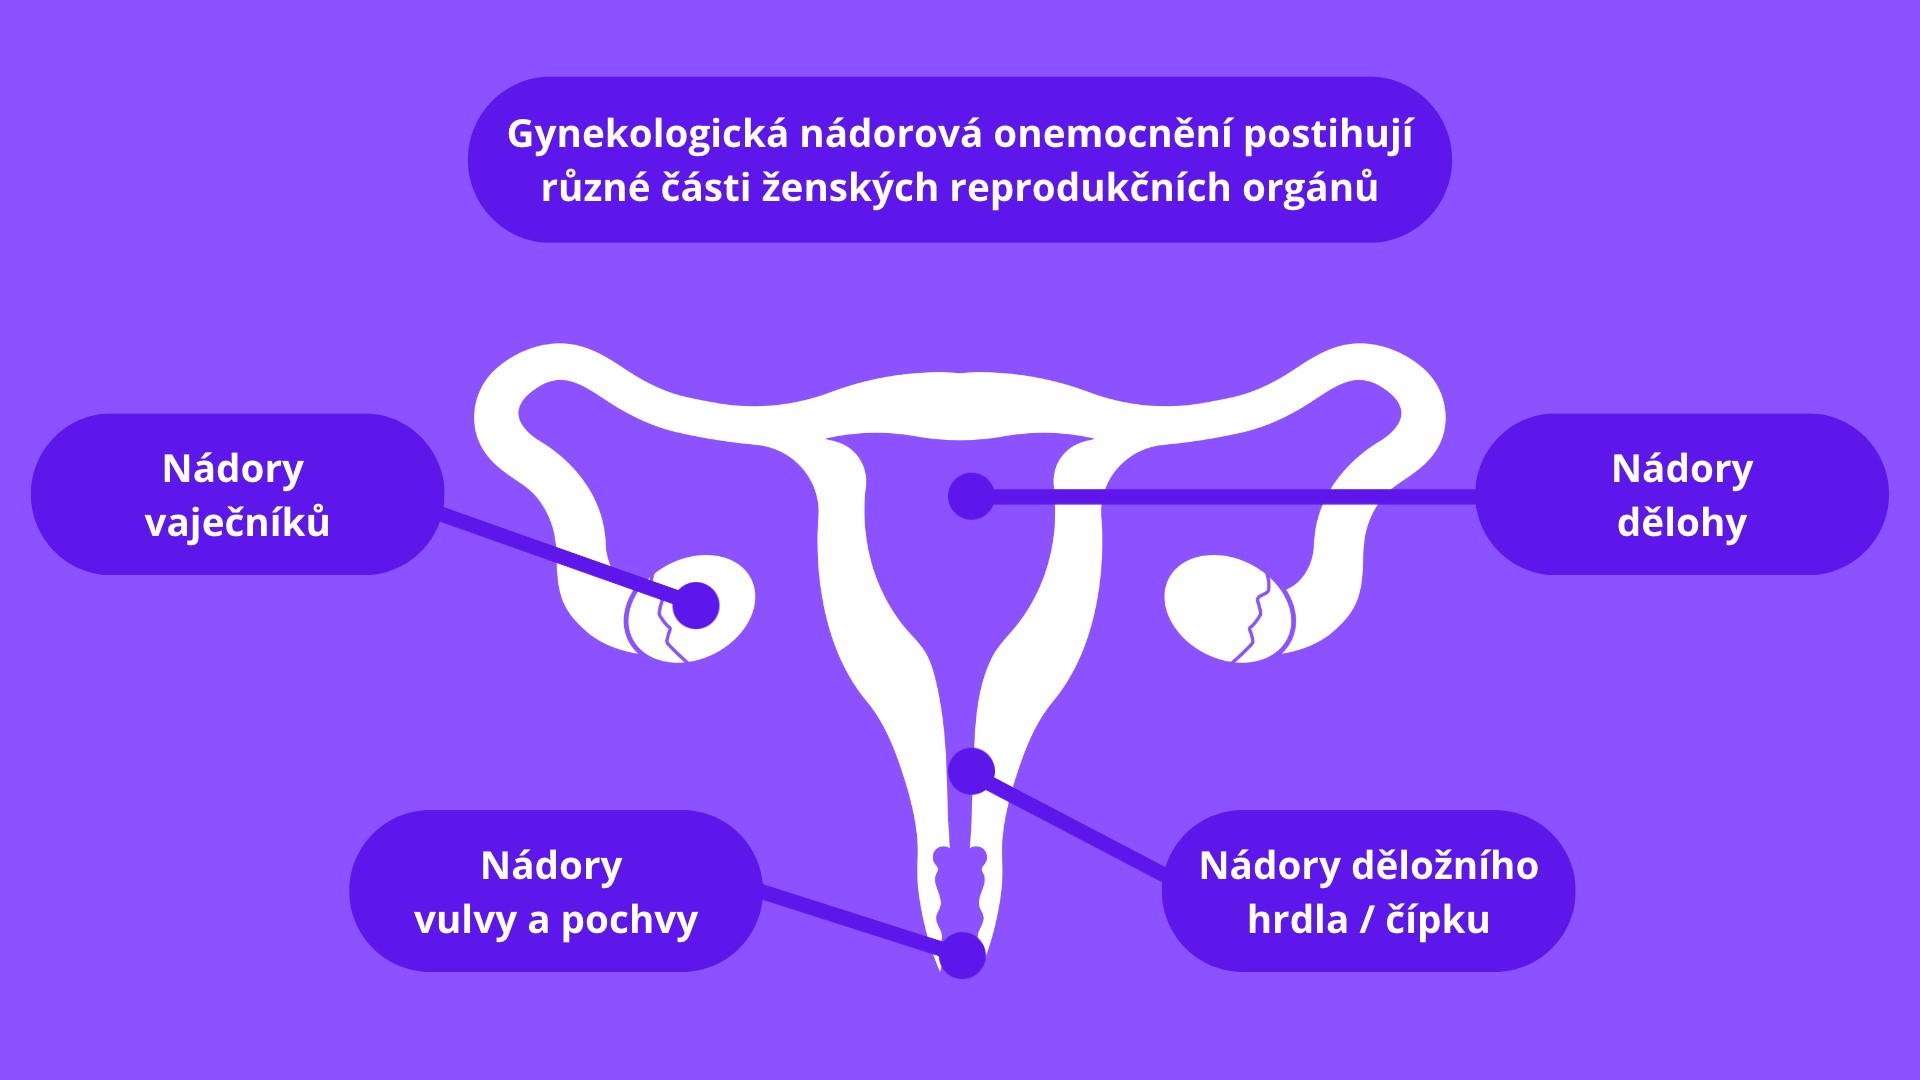 Obr. Ženské reprodukční orgány a jejich možné onkologické postižení